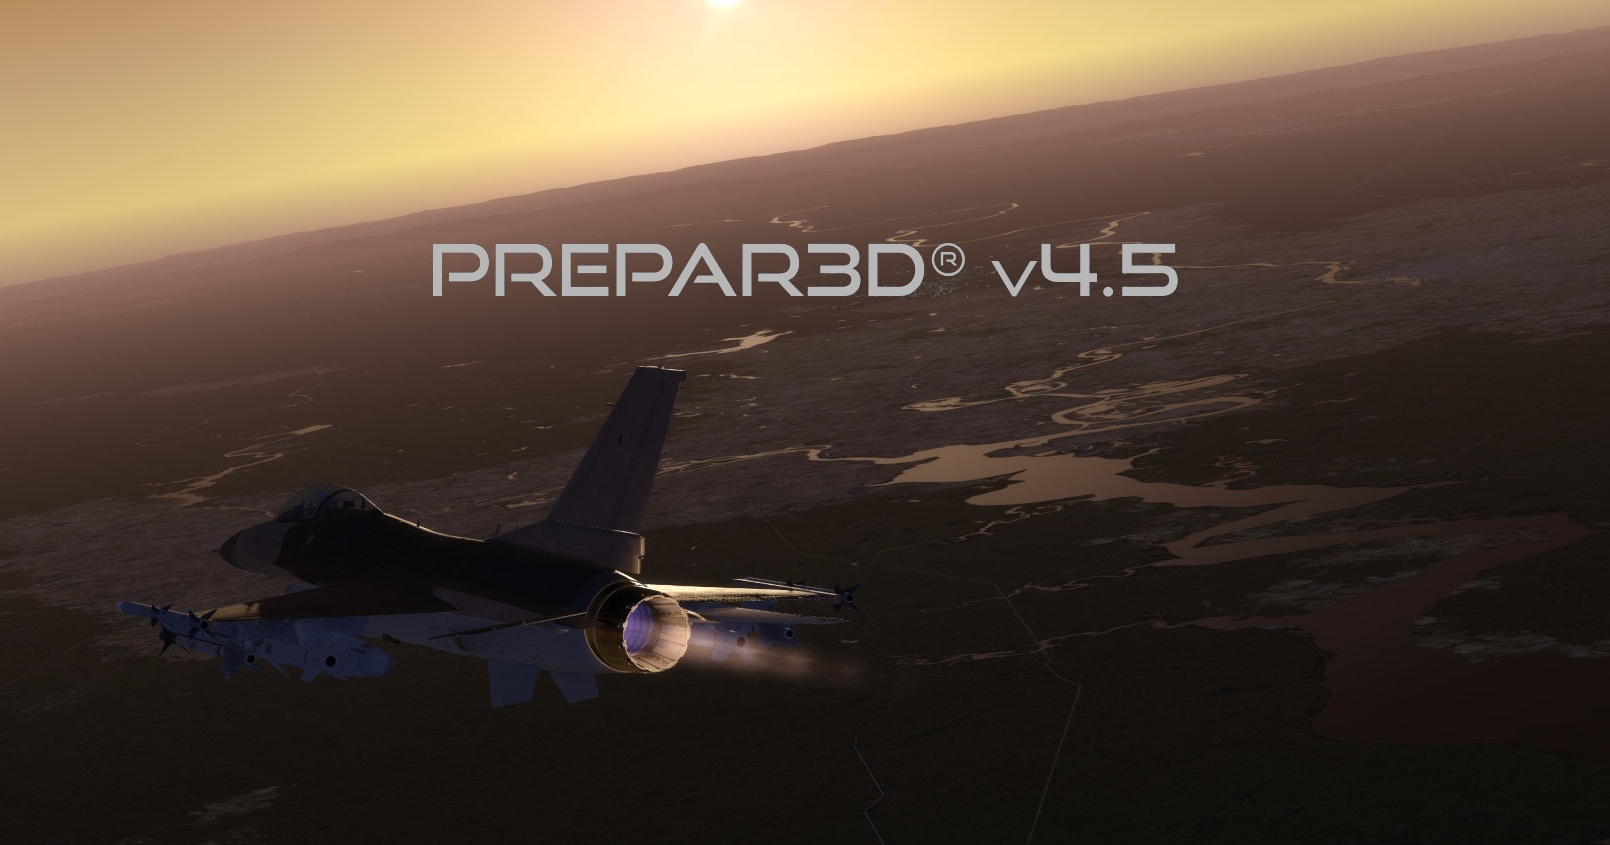 Prepar3D v4.5 released